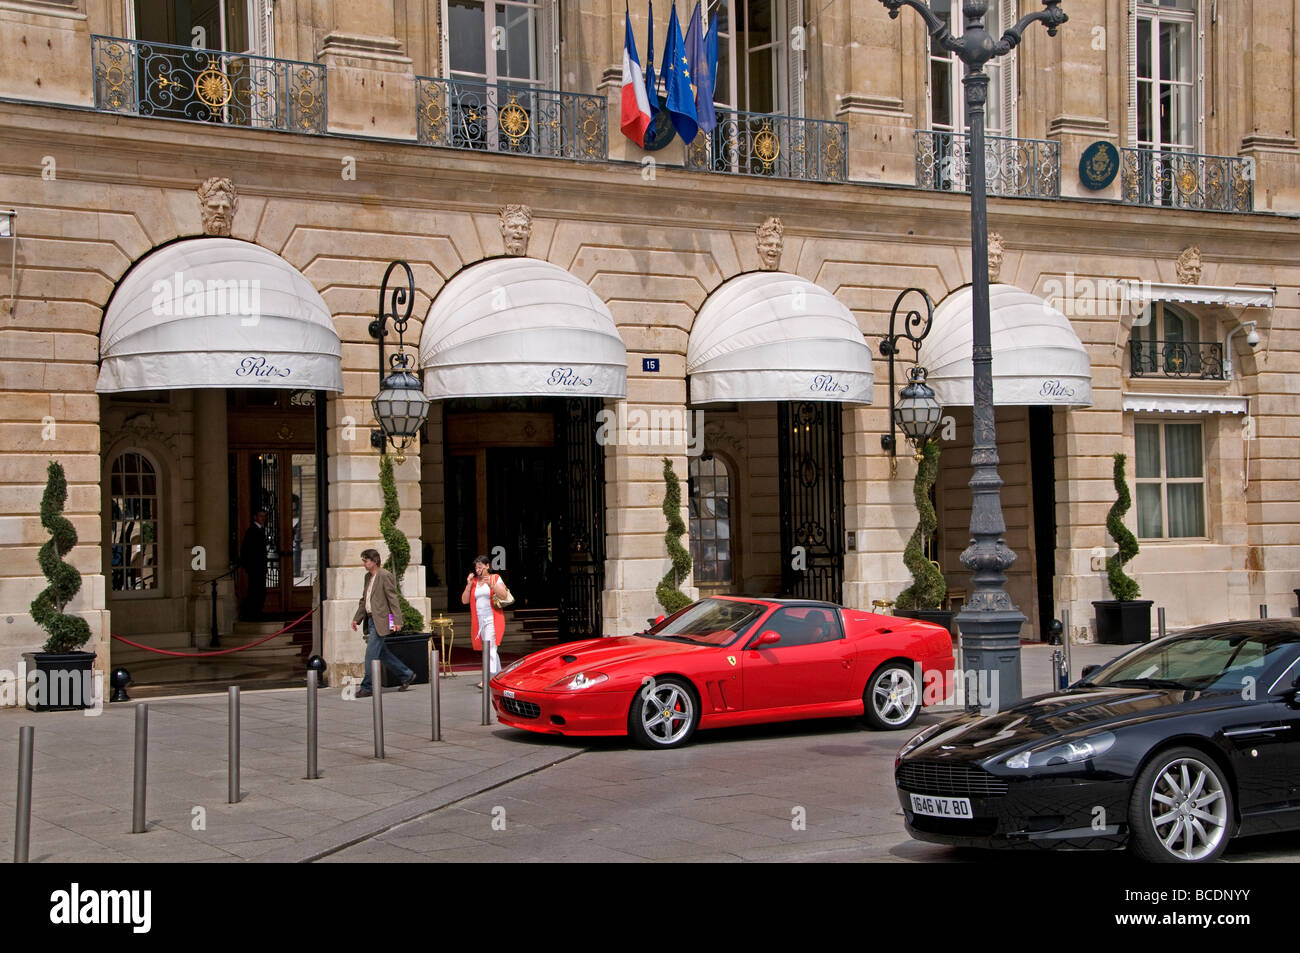 Hotel Ritz - Place Vendome - Paris - France 